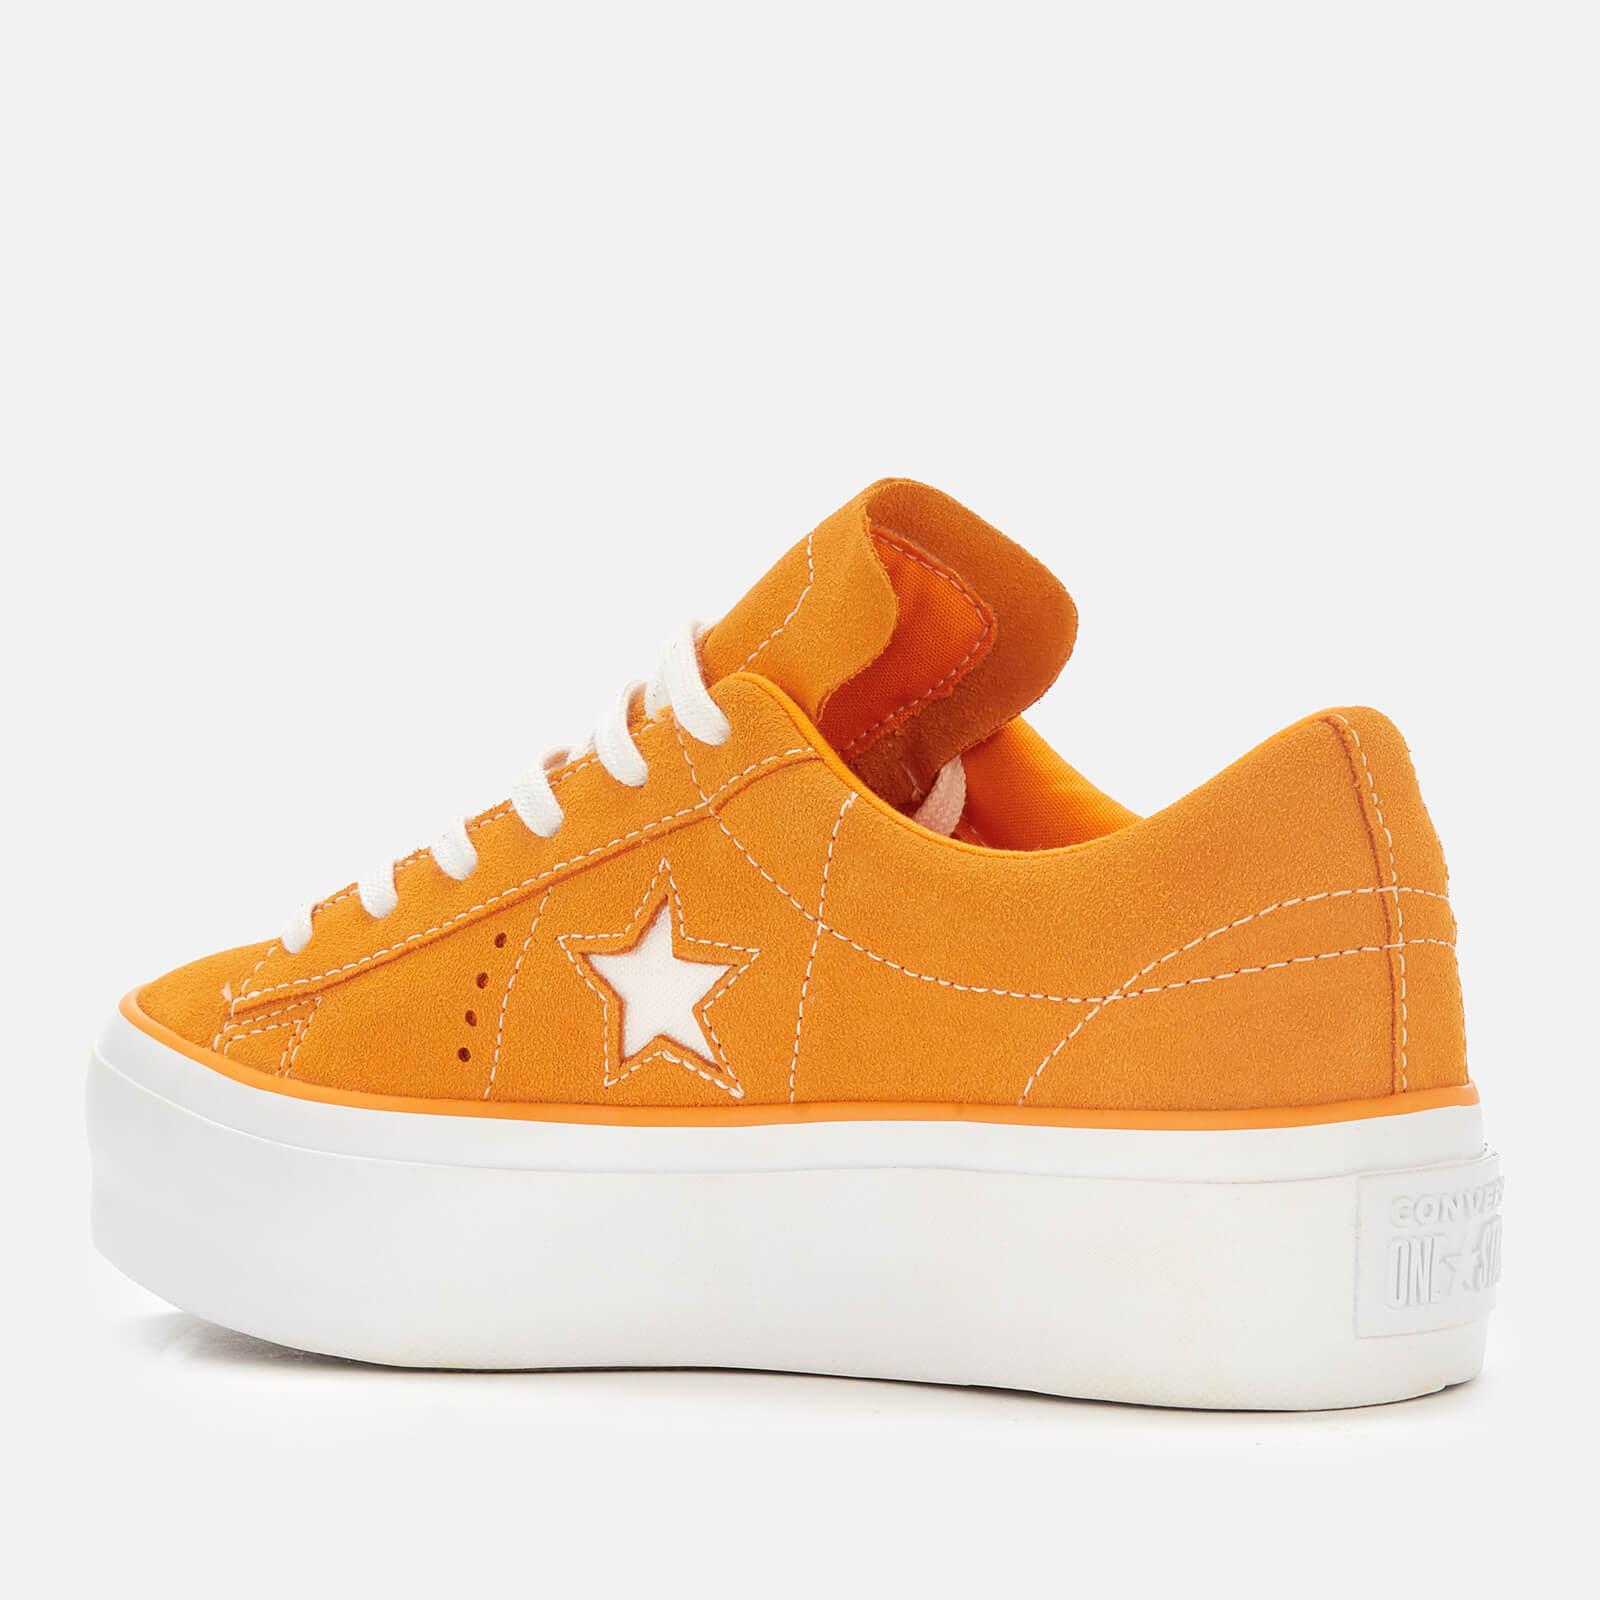 Converse One Star Platform Low-top Sneakers in Orange | Lyst